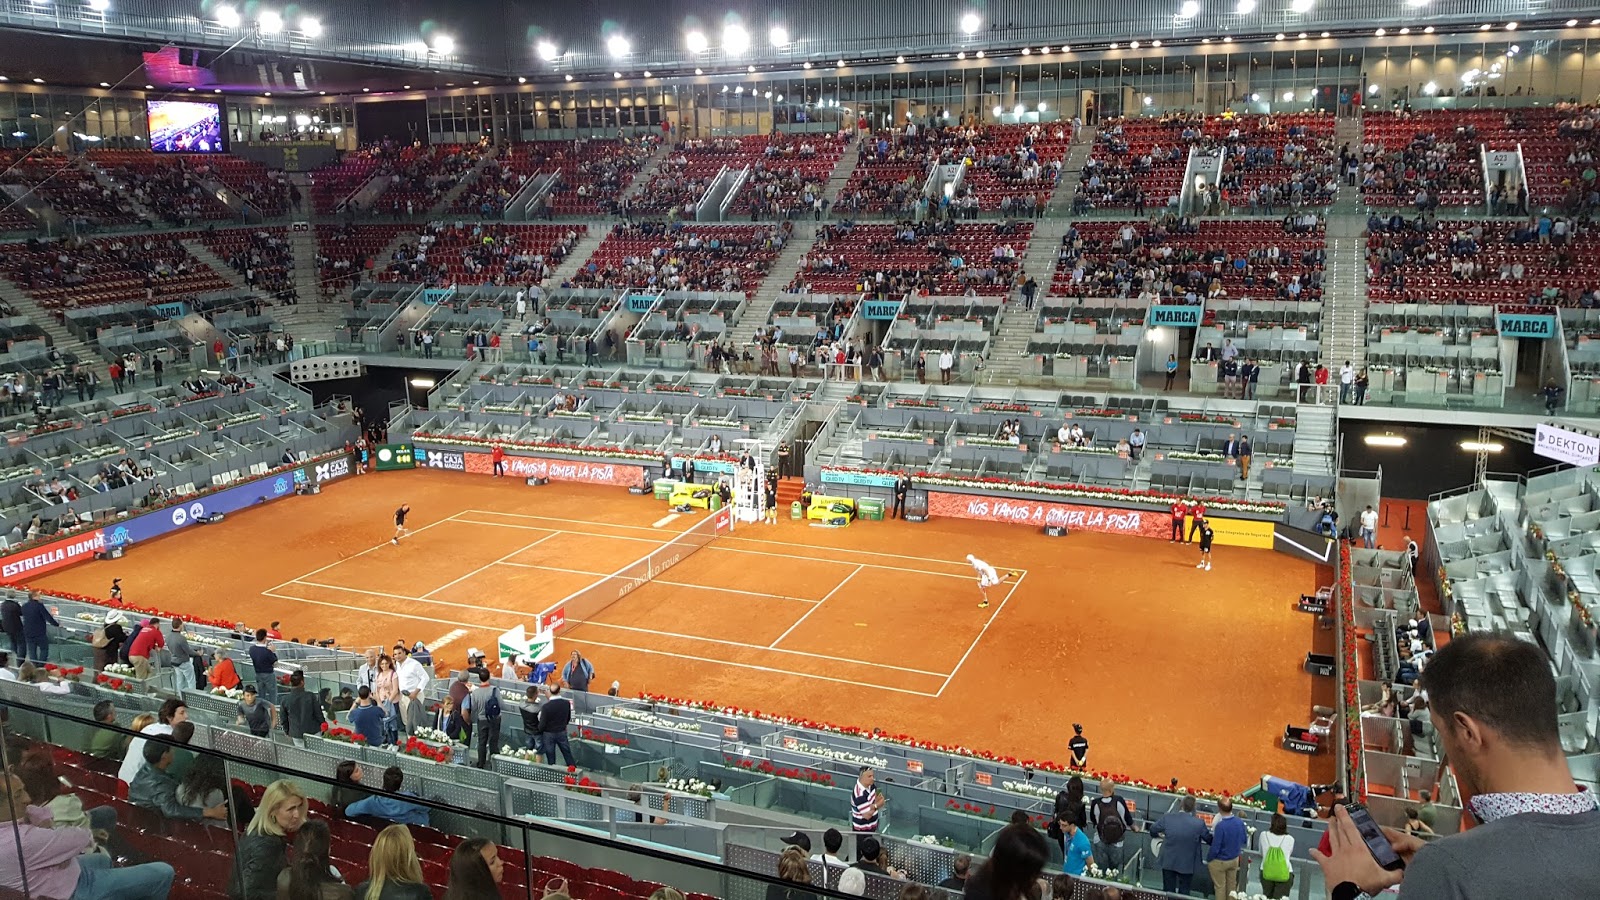 Día a día: Tenis. Madrid. Gran ambiente, extraordinario escenario y